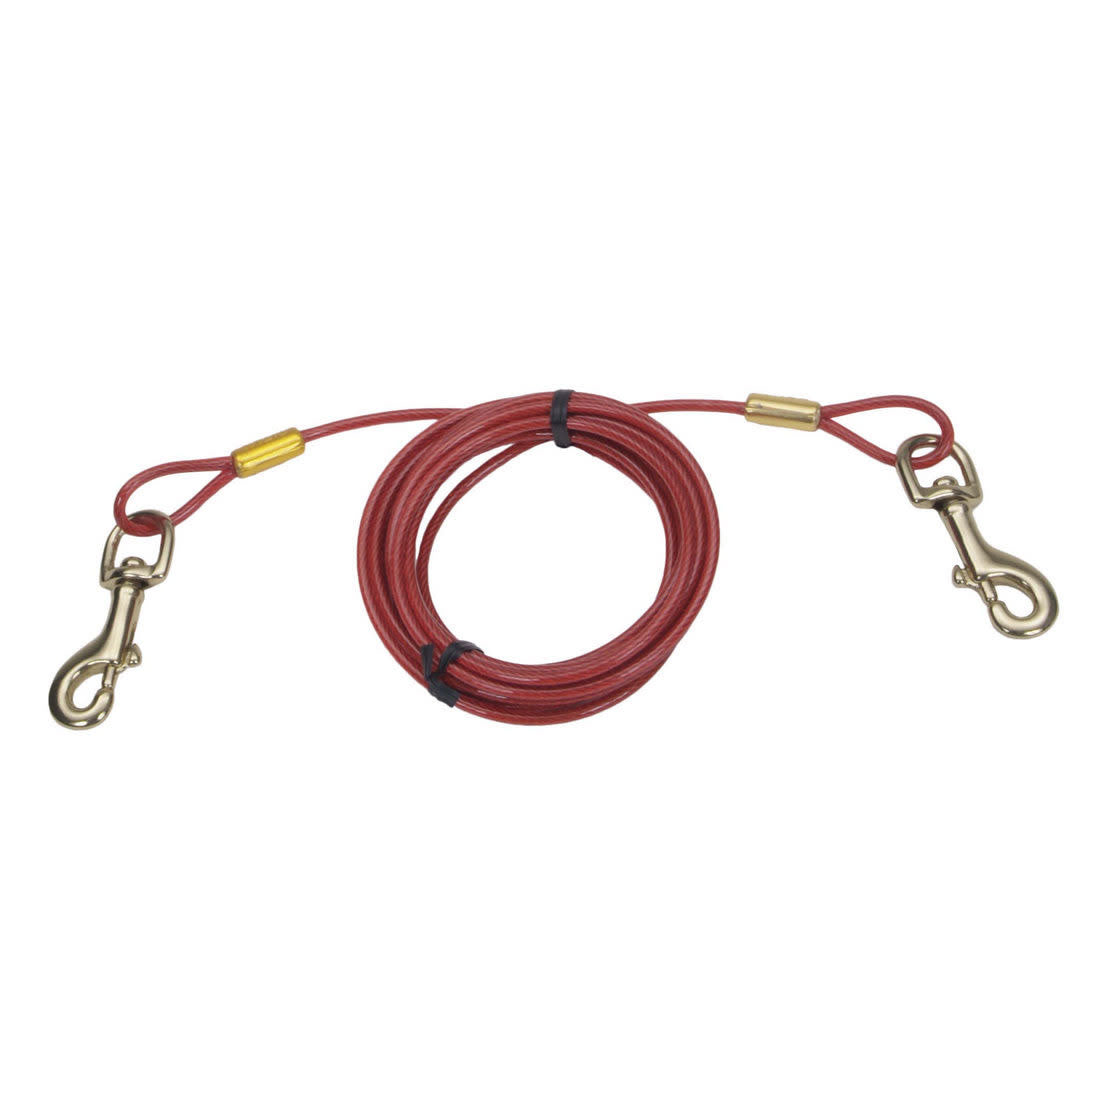 Costal cable dattache Câble d'attache pour chiens - Large